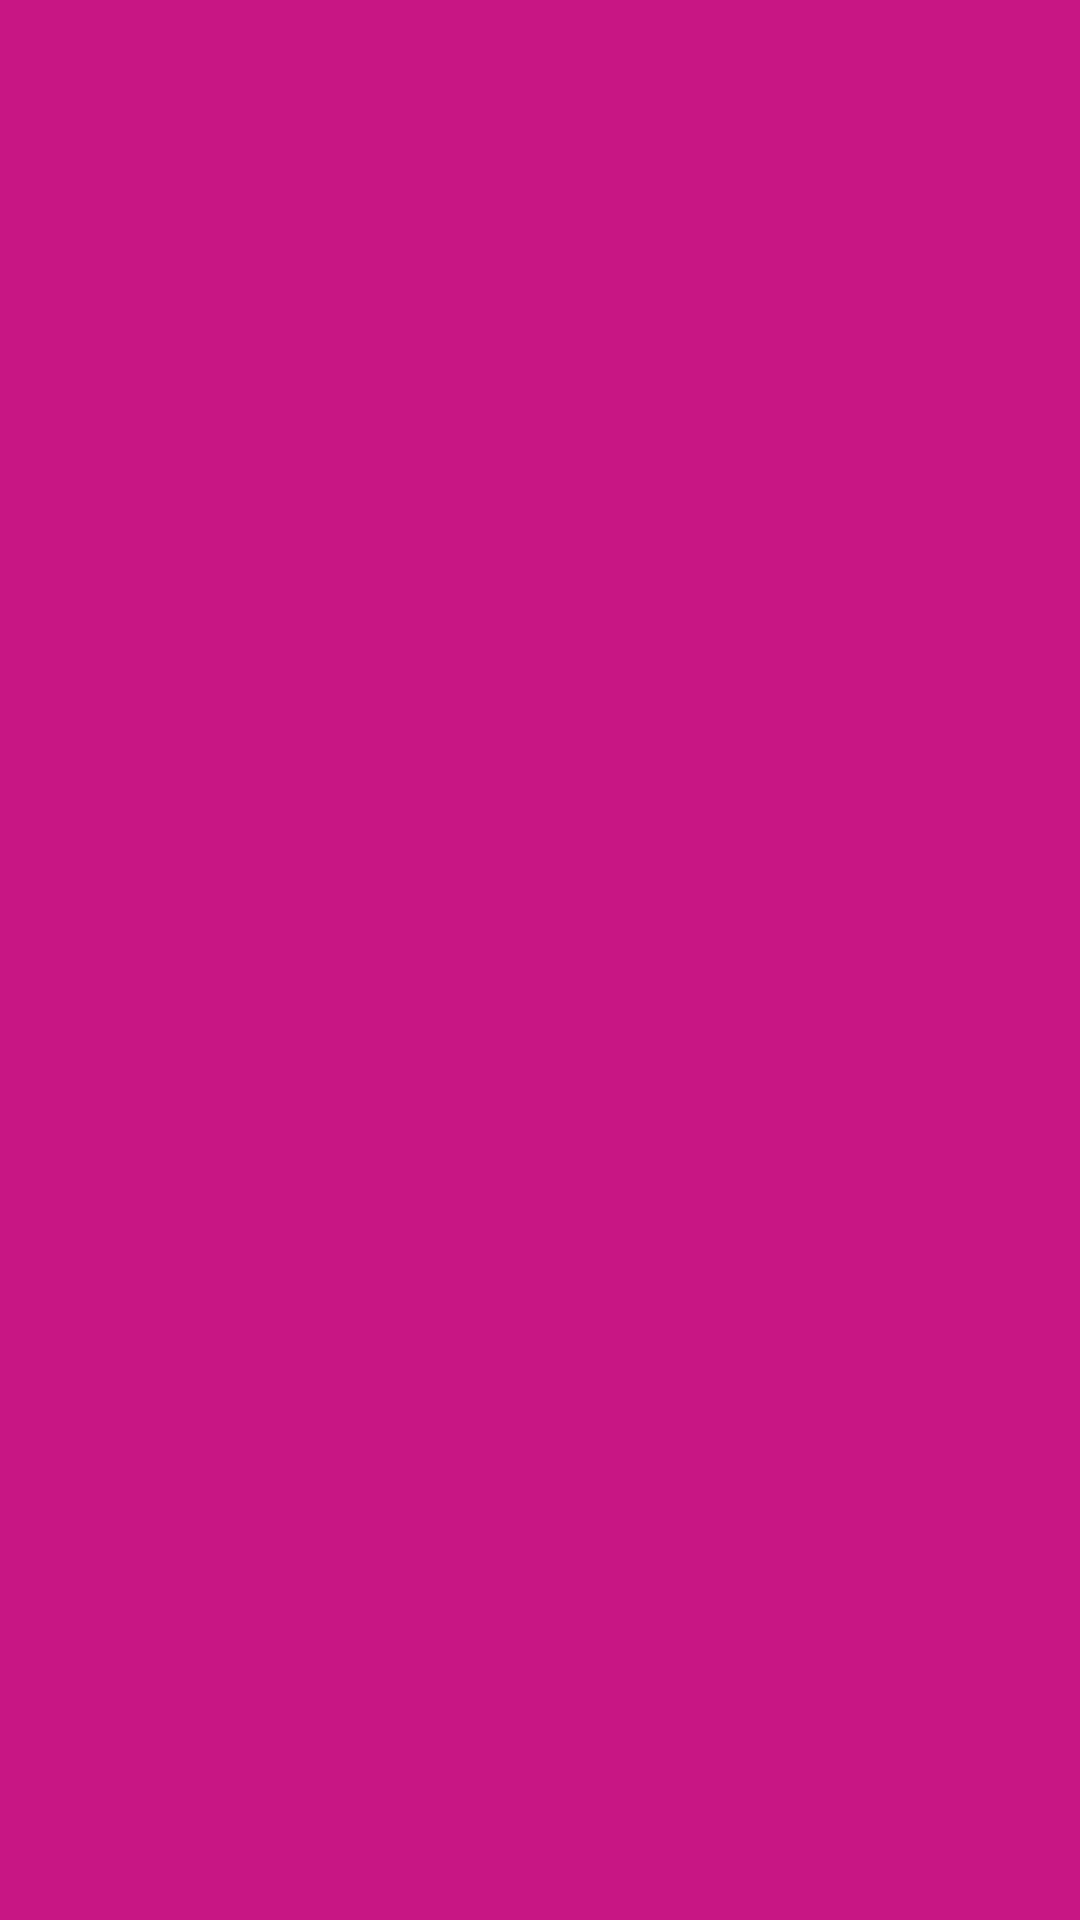 1080x1920 Medium Violet-red Solid Color Background